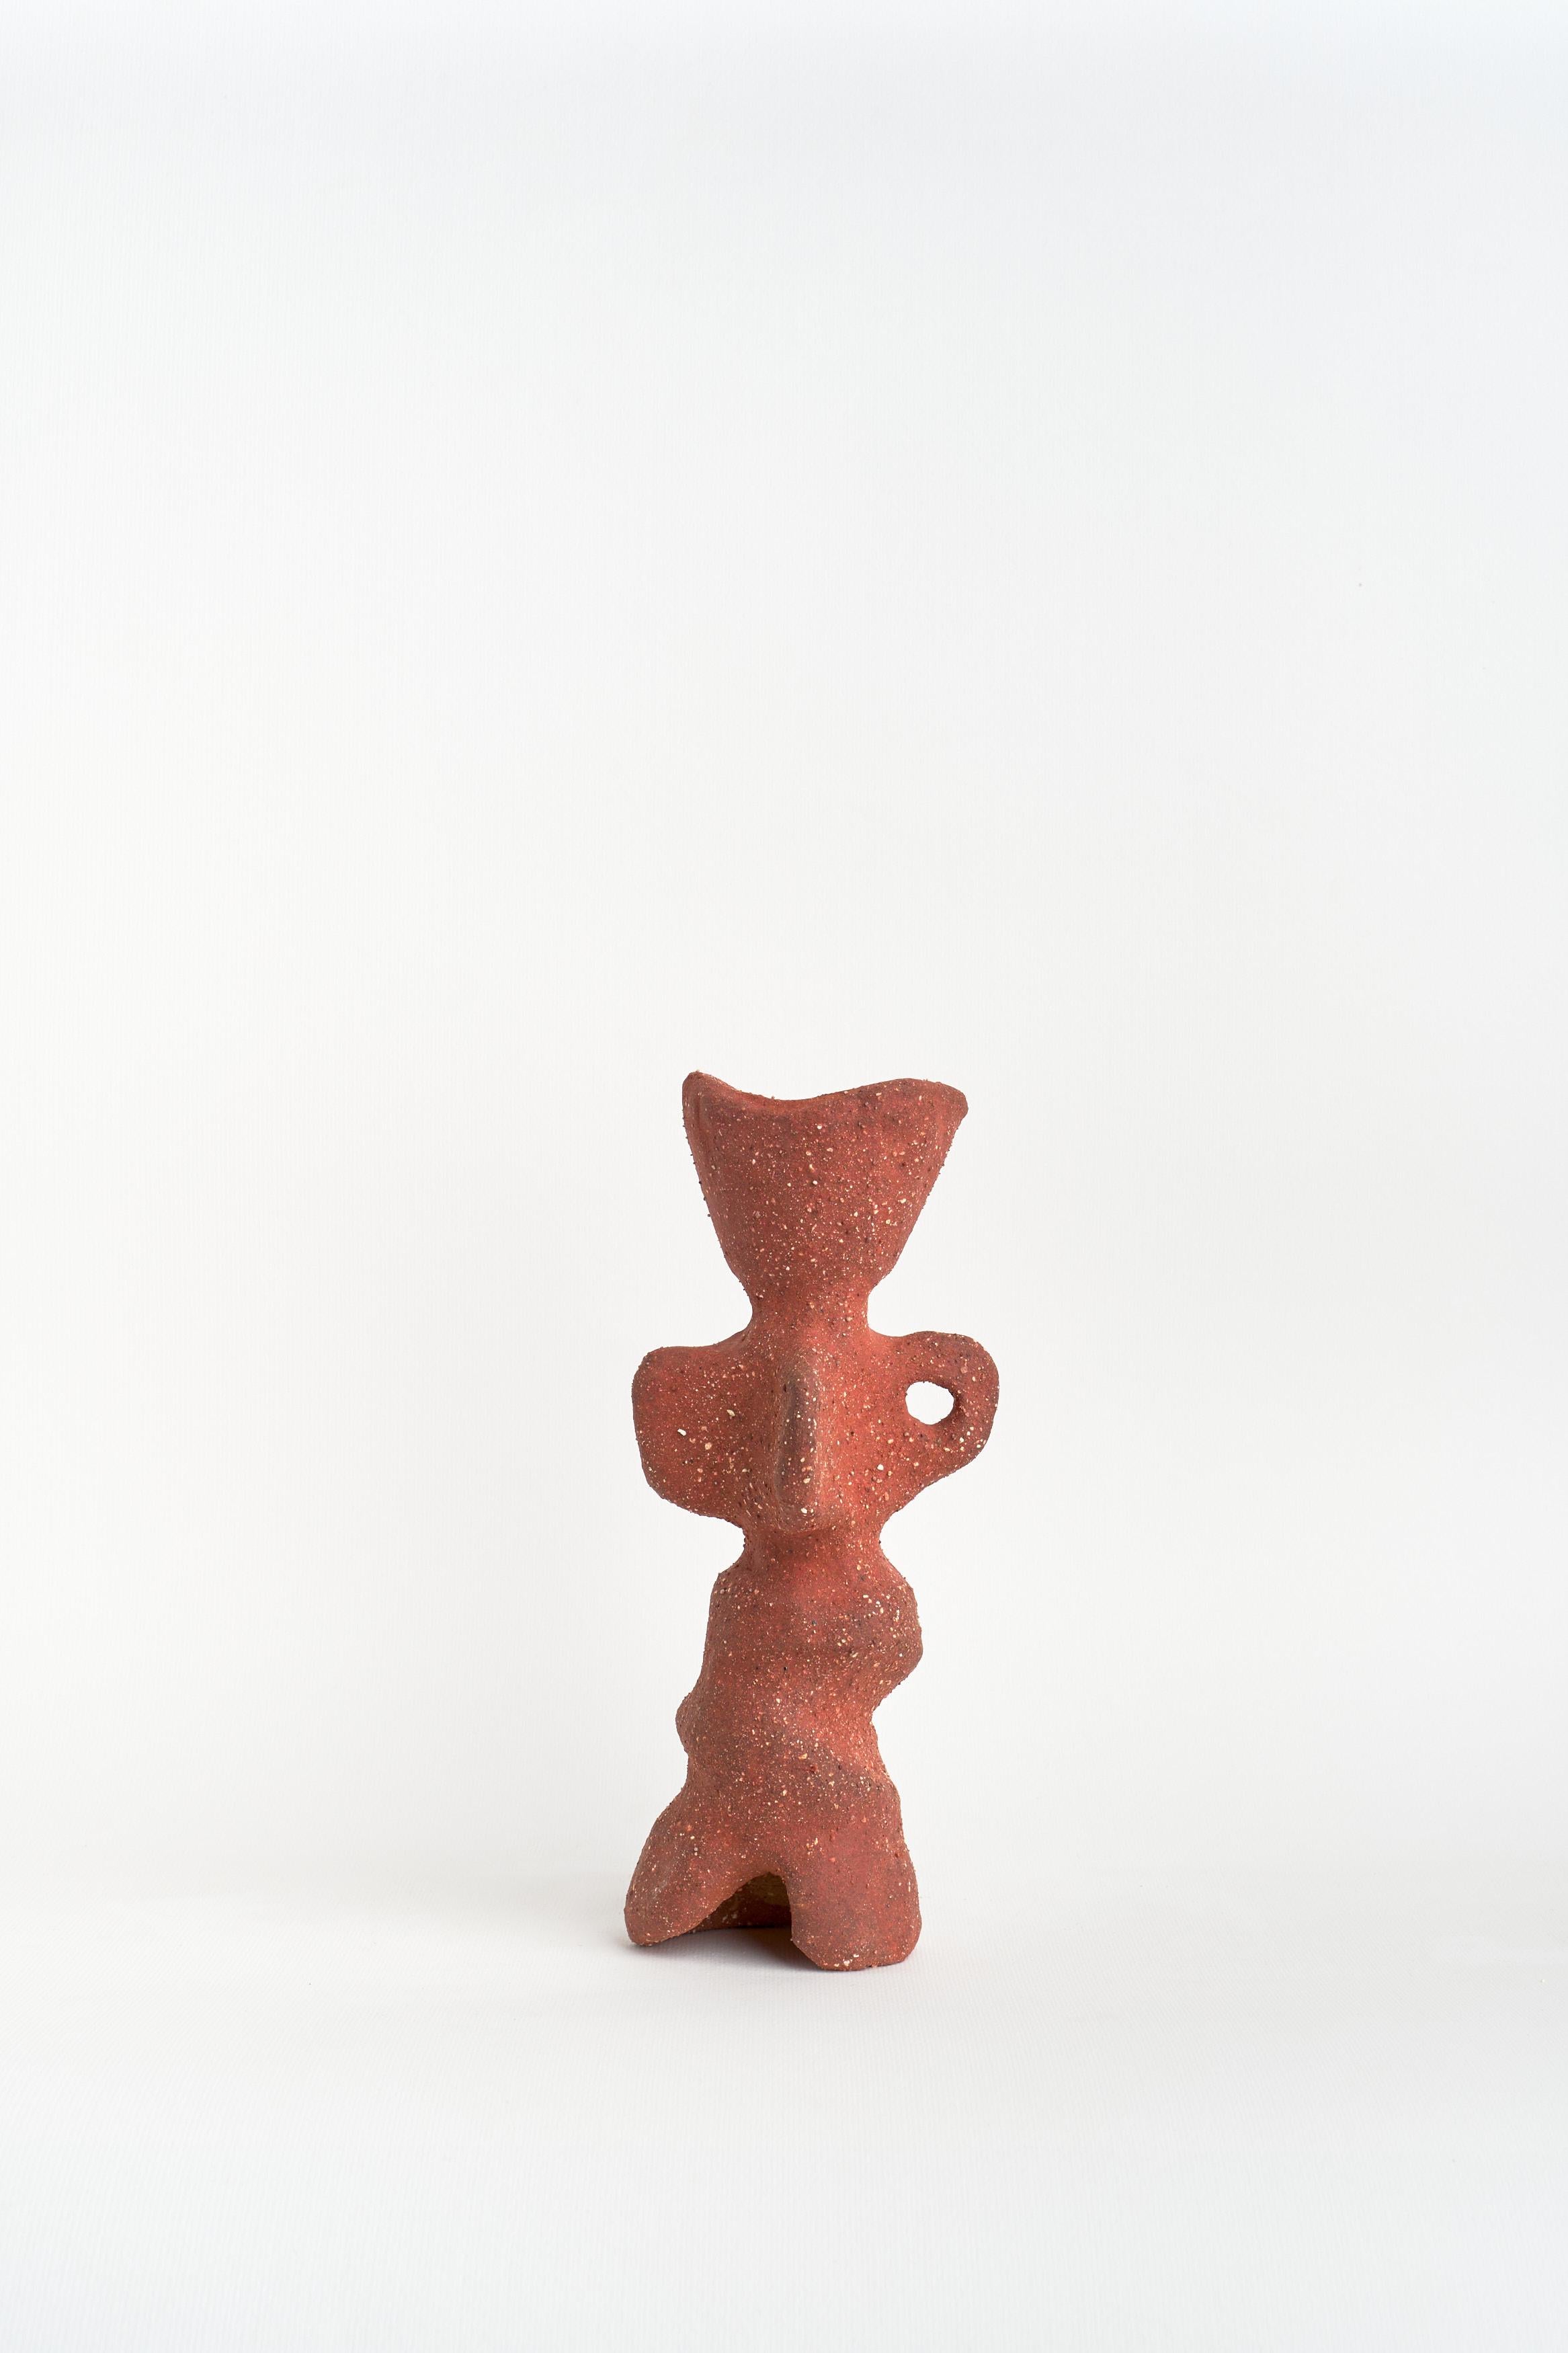 Kandelaber mit 4 Kerzenhaltern von Camila Apaez
Einzigartig
MATERIALIEN: Steinzeug, Rote Tonerde
Abmessungen: ⌀ 7 x H 20 cm

Ila Ceramica ist aus einem Prozess der inneren Suche entstanden, in dem die Keramik zu einem Raum für Präsenz, Stille,